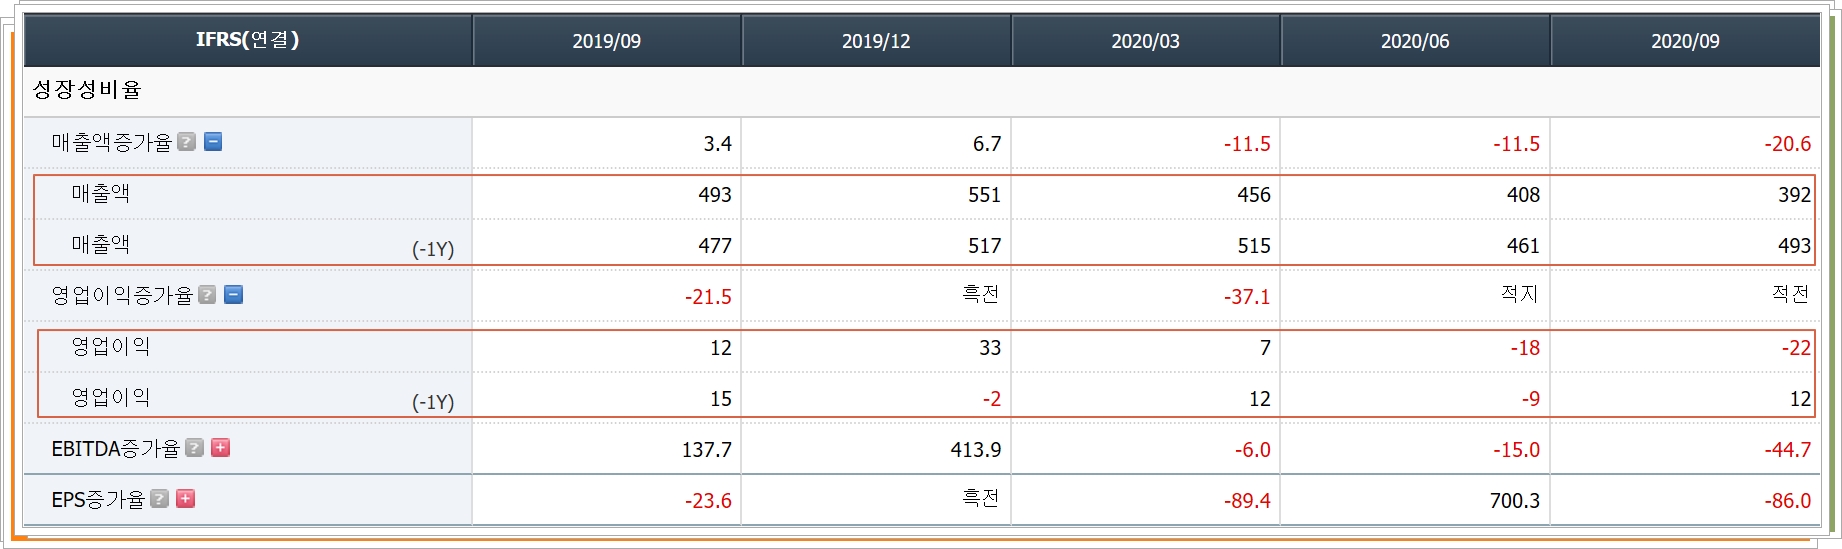 삼성출판사 재무제표 중 성장성 비율 화면